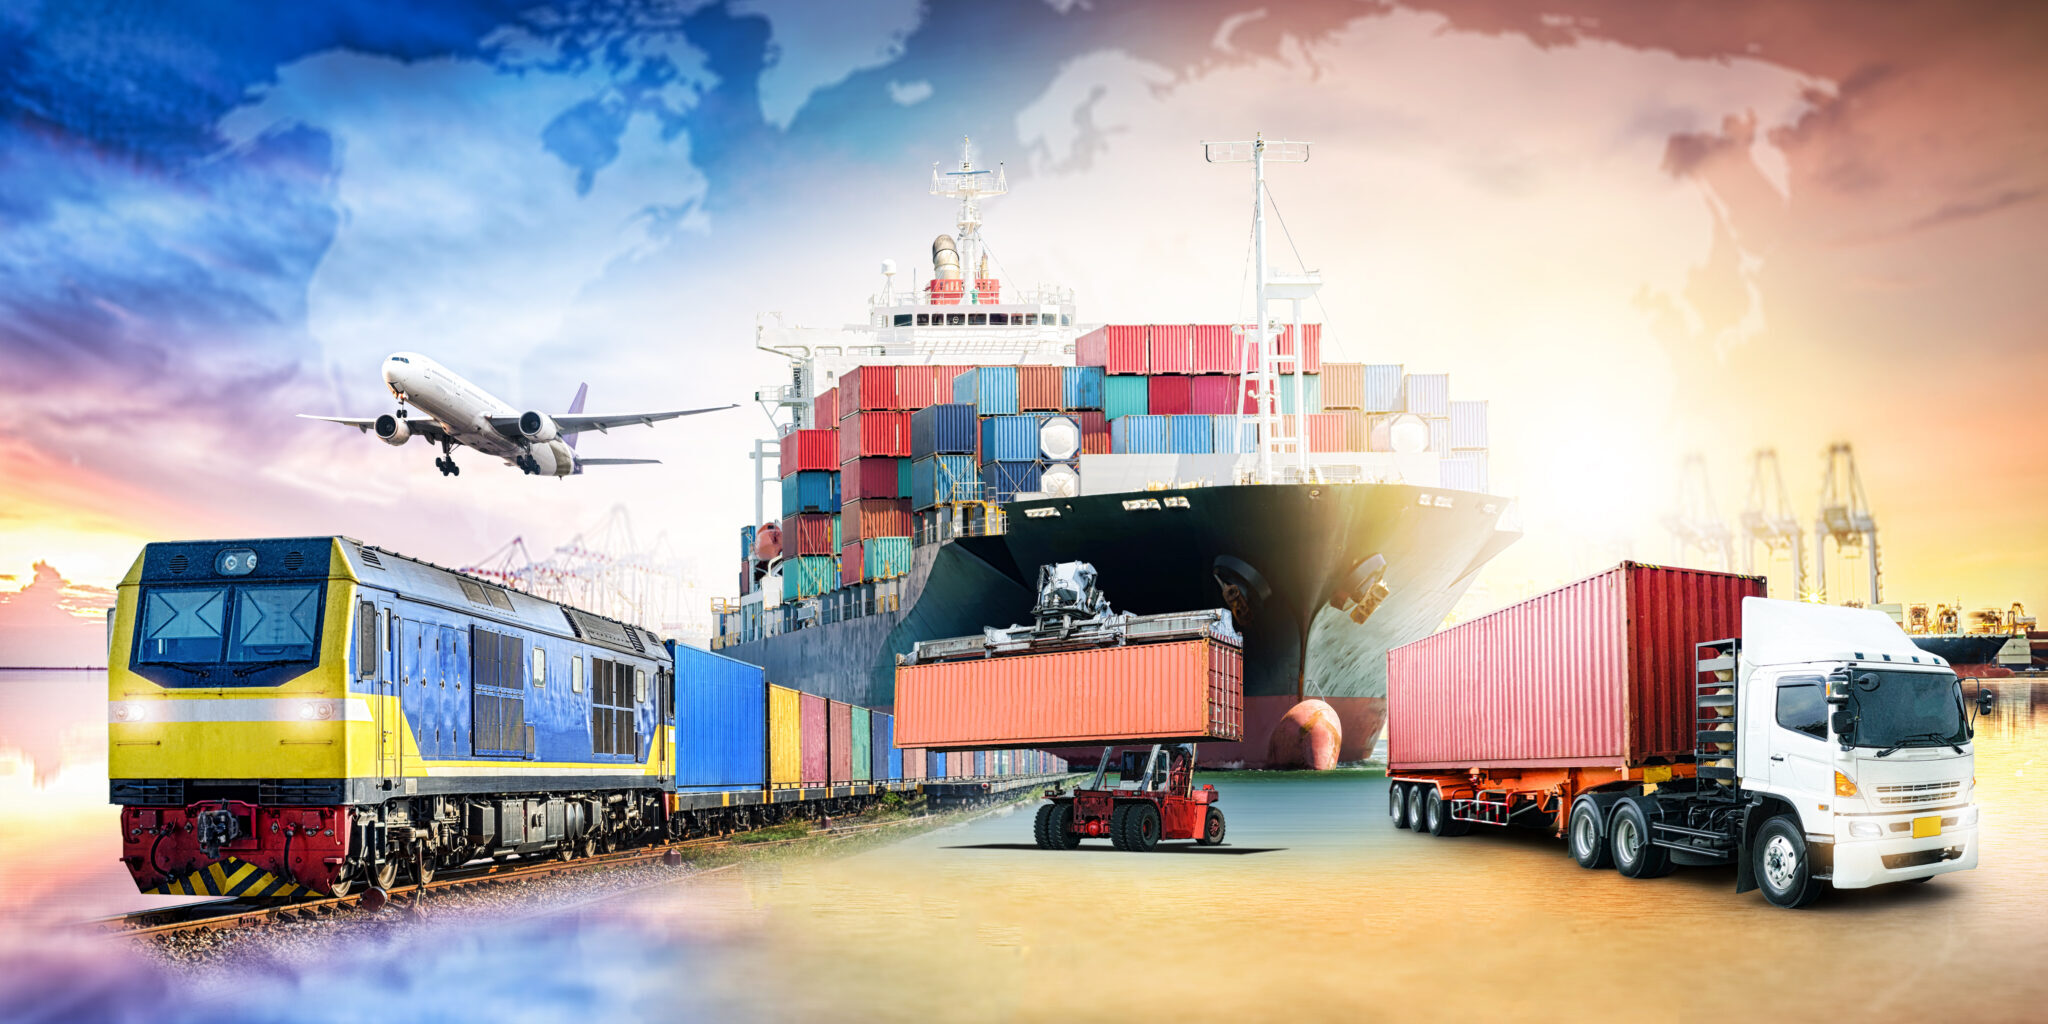 Перевозка грузов автомобильным транспортом сопряжена со своими проблемами, но с правильные меры, поставщики логистических услуг могут наслаждаться более плавной поездкой. DHL Logistics of Things